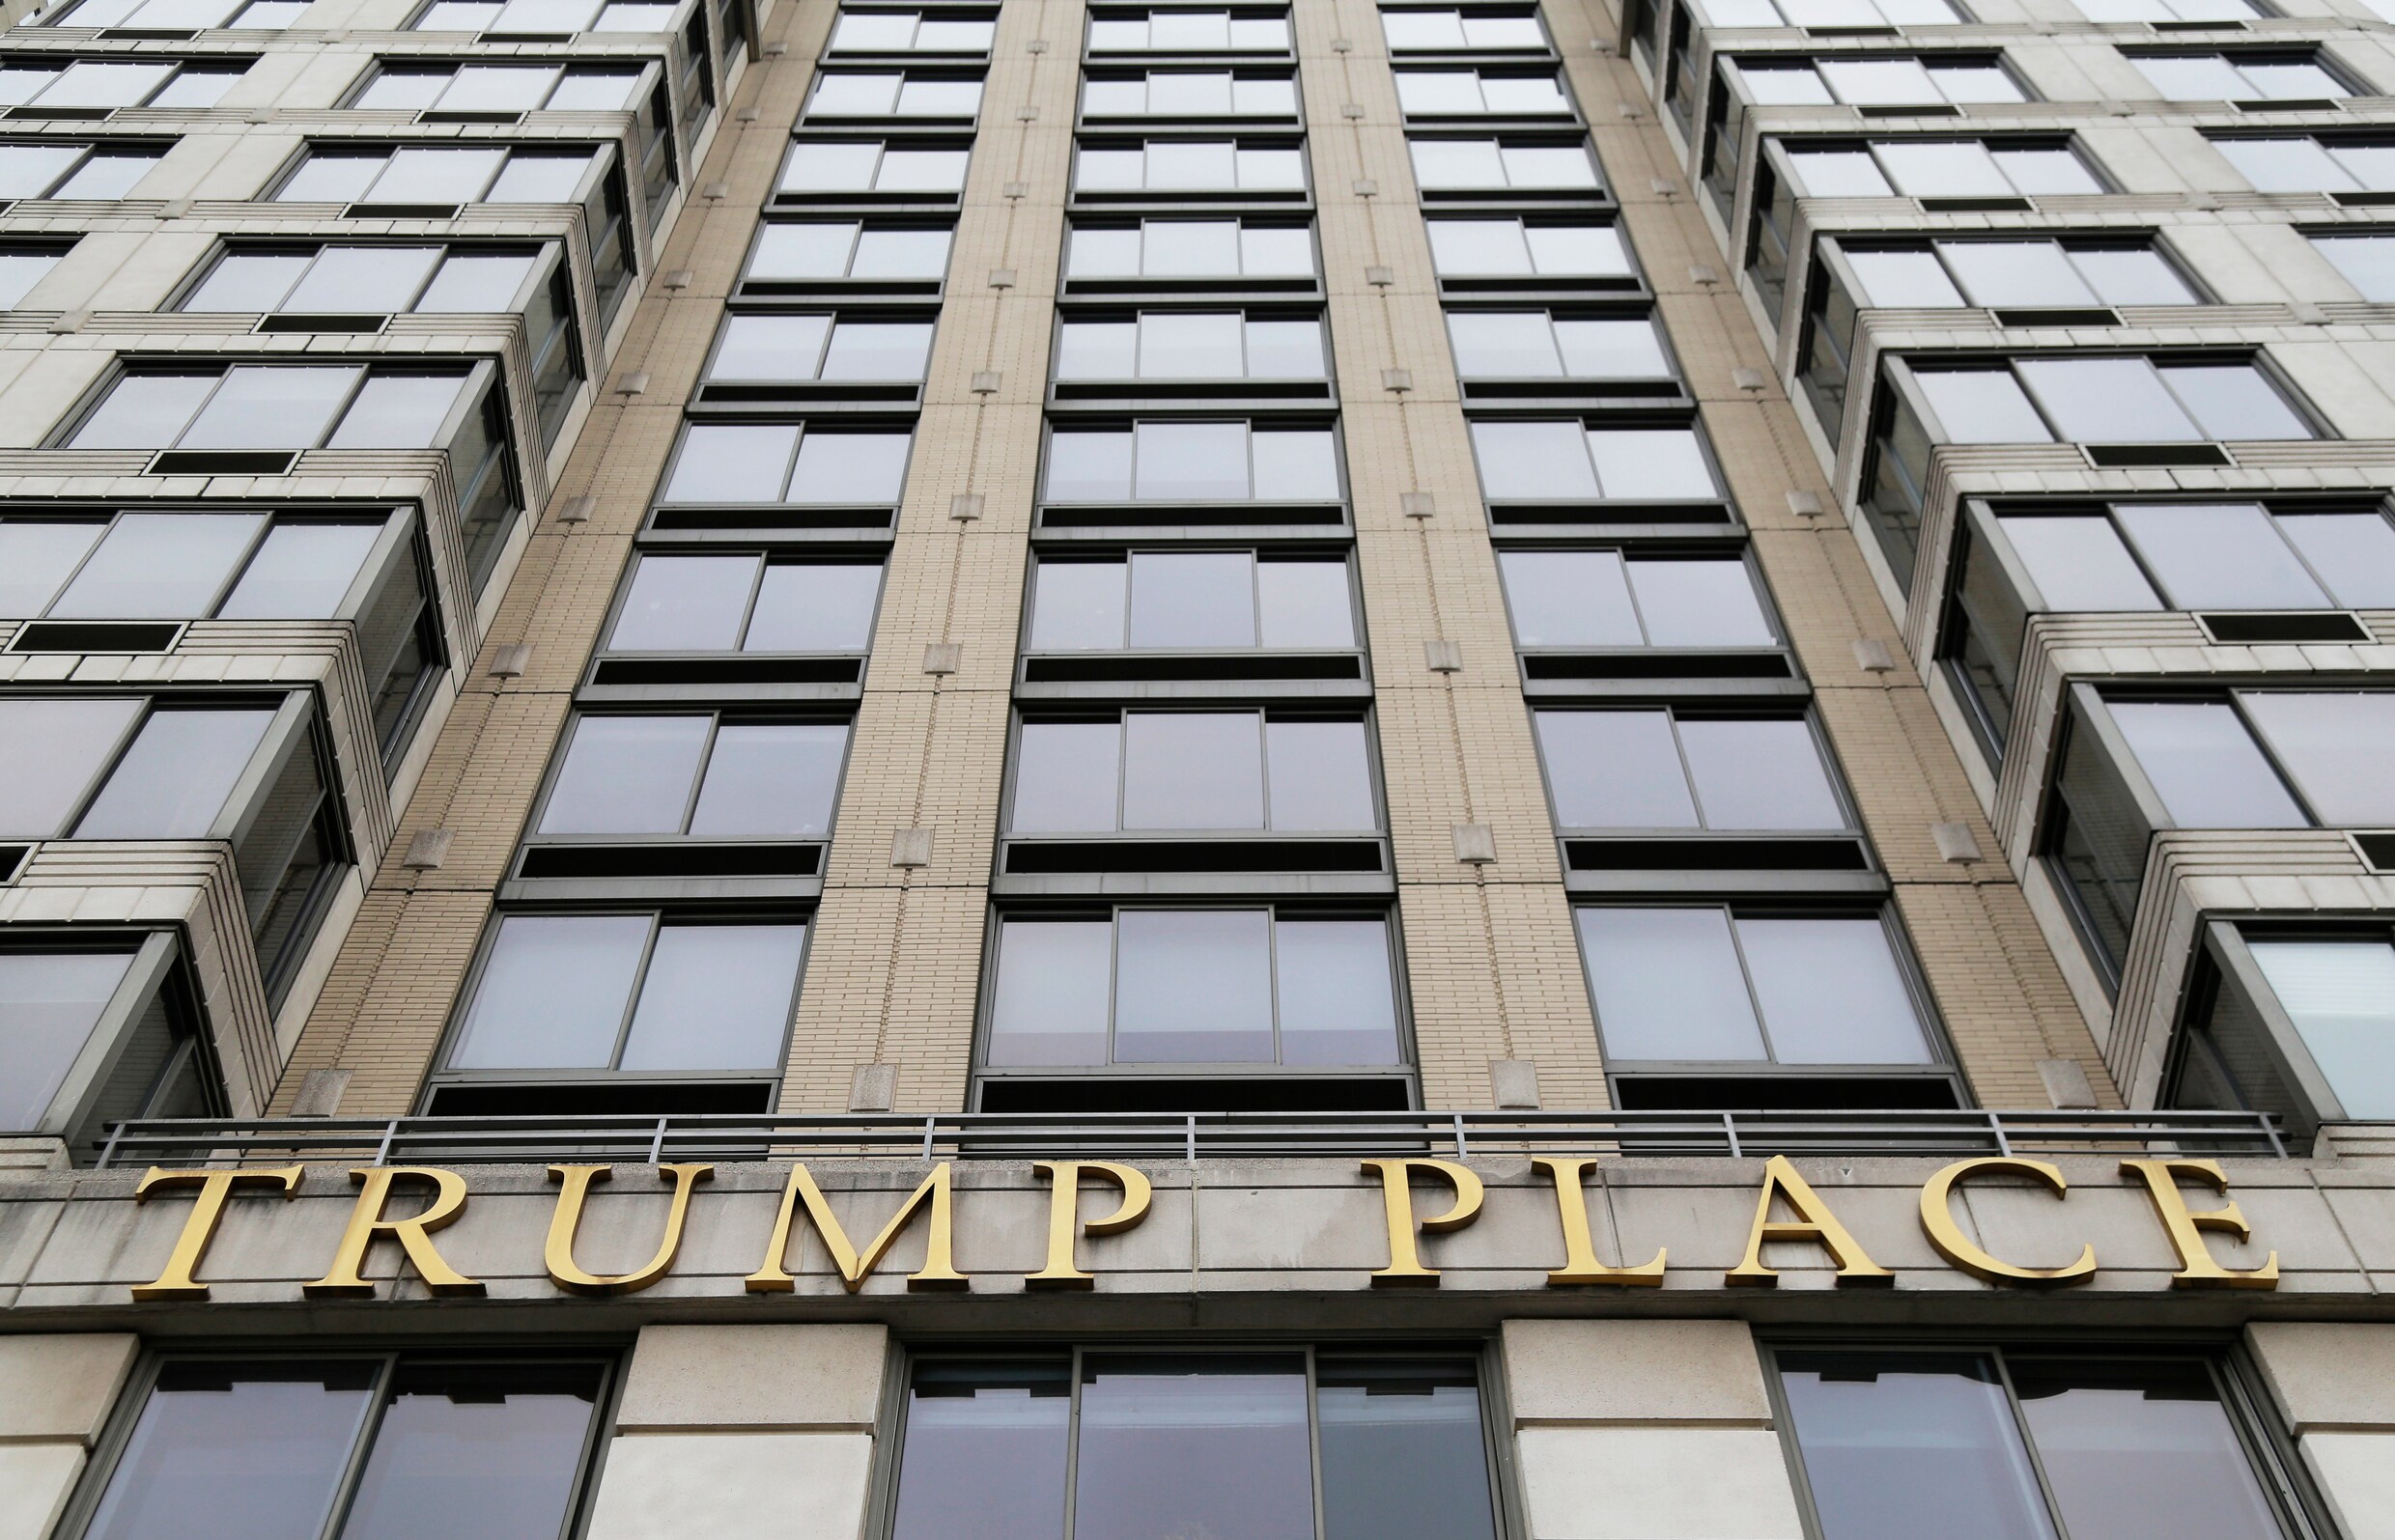 Bewoners stemmen naam ‘Trump Place’ weg voor appartementsblok in New York